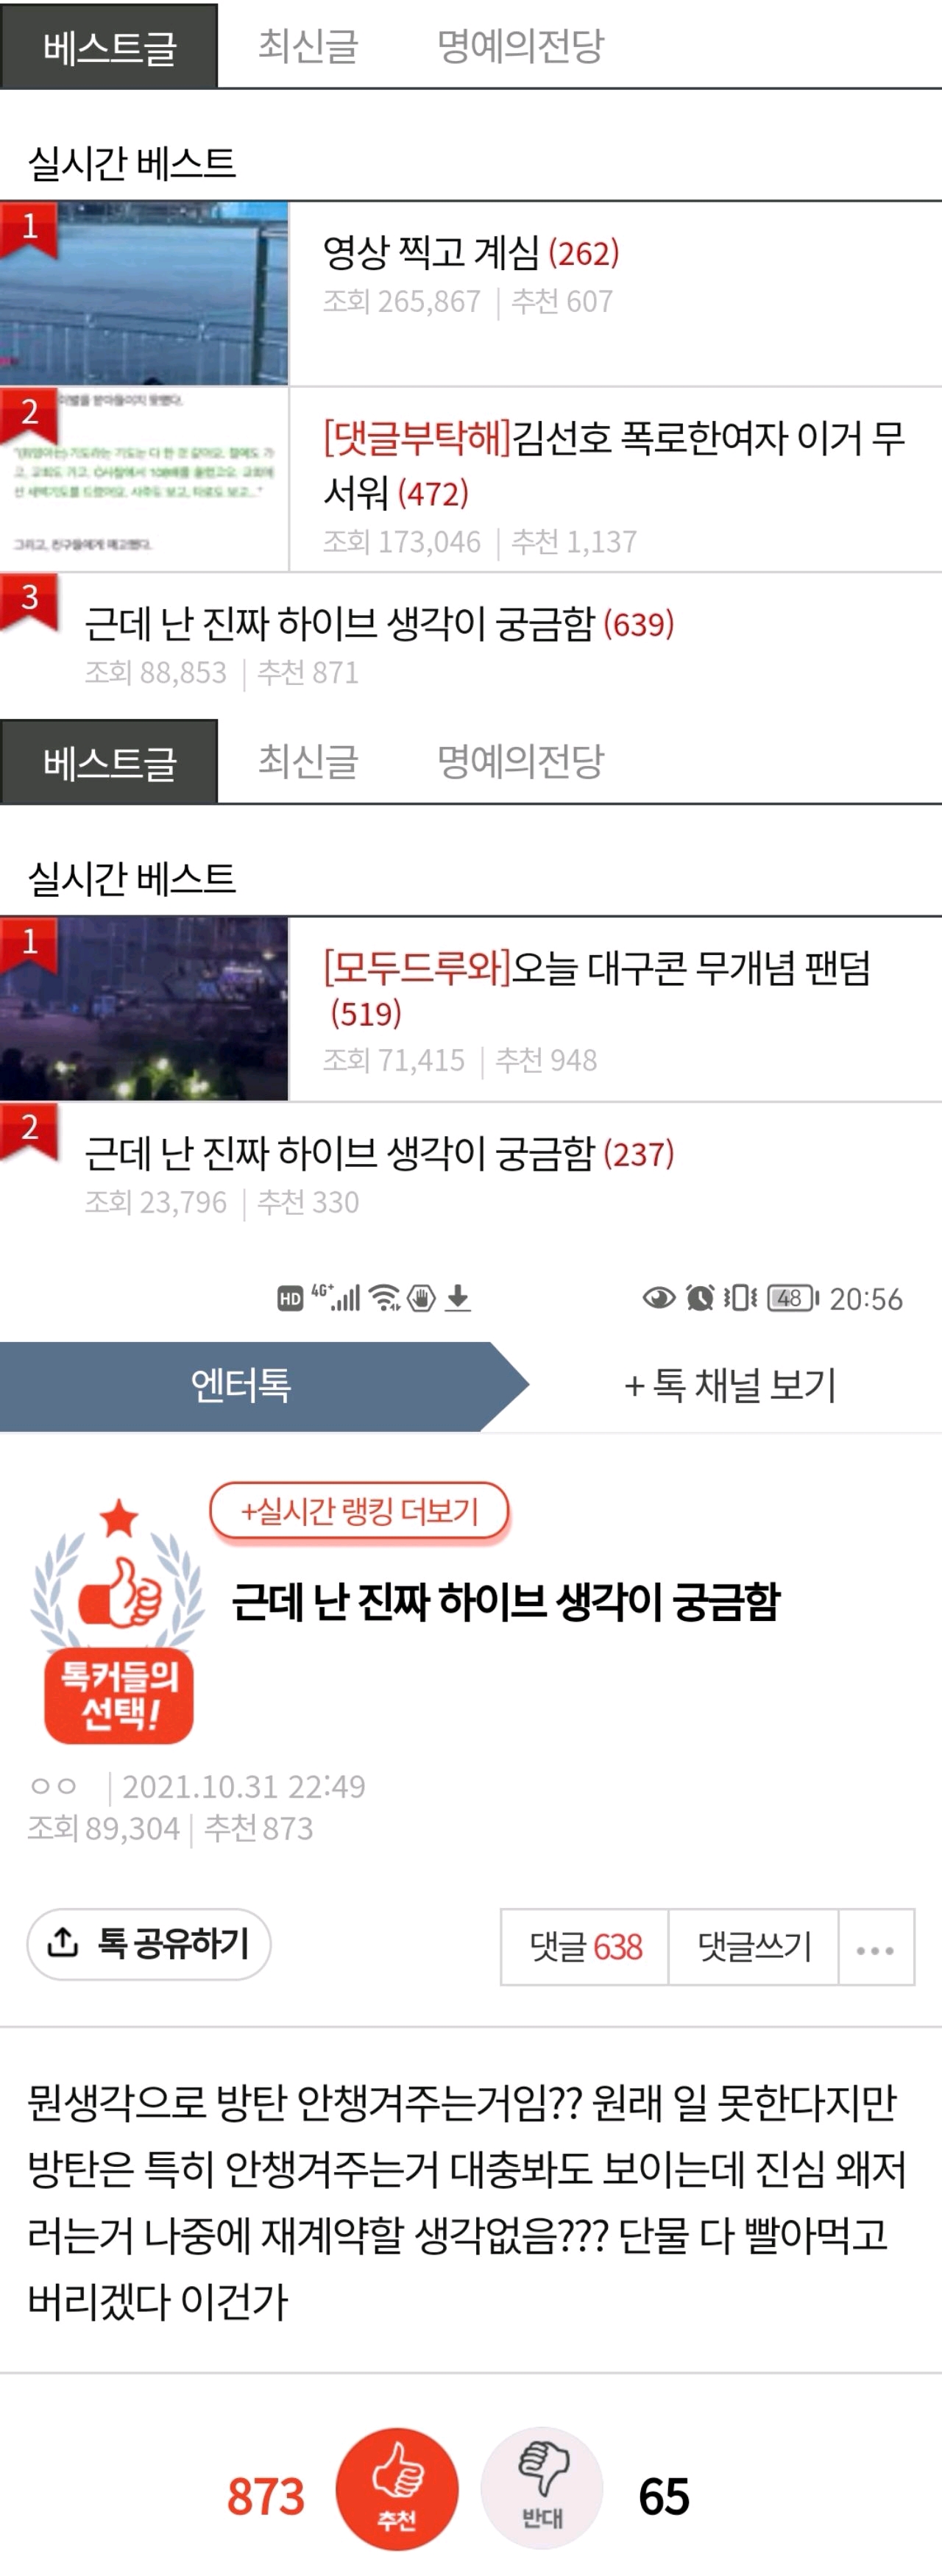 防弹少年团让韩国论坛榜单TOP 3的“我真的很好奇Hybe的想法”